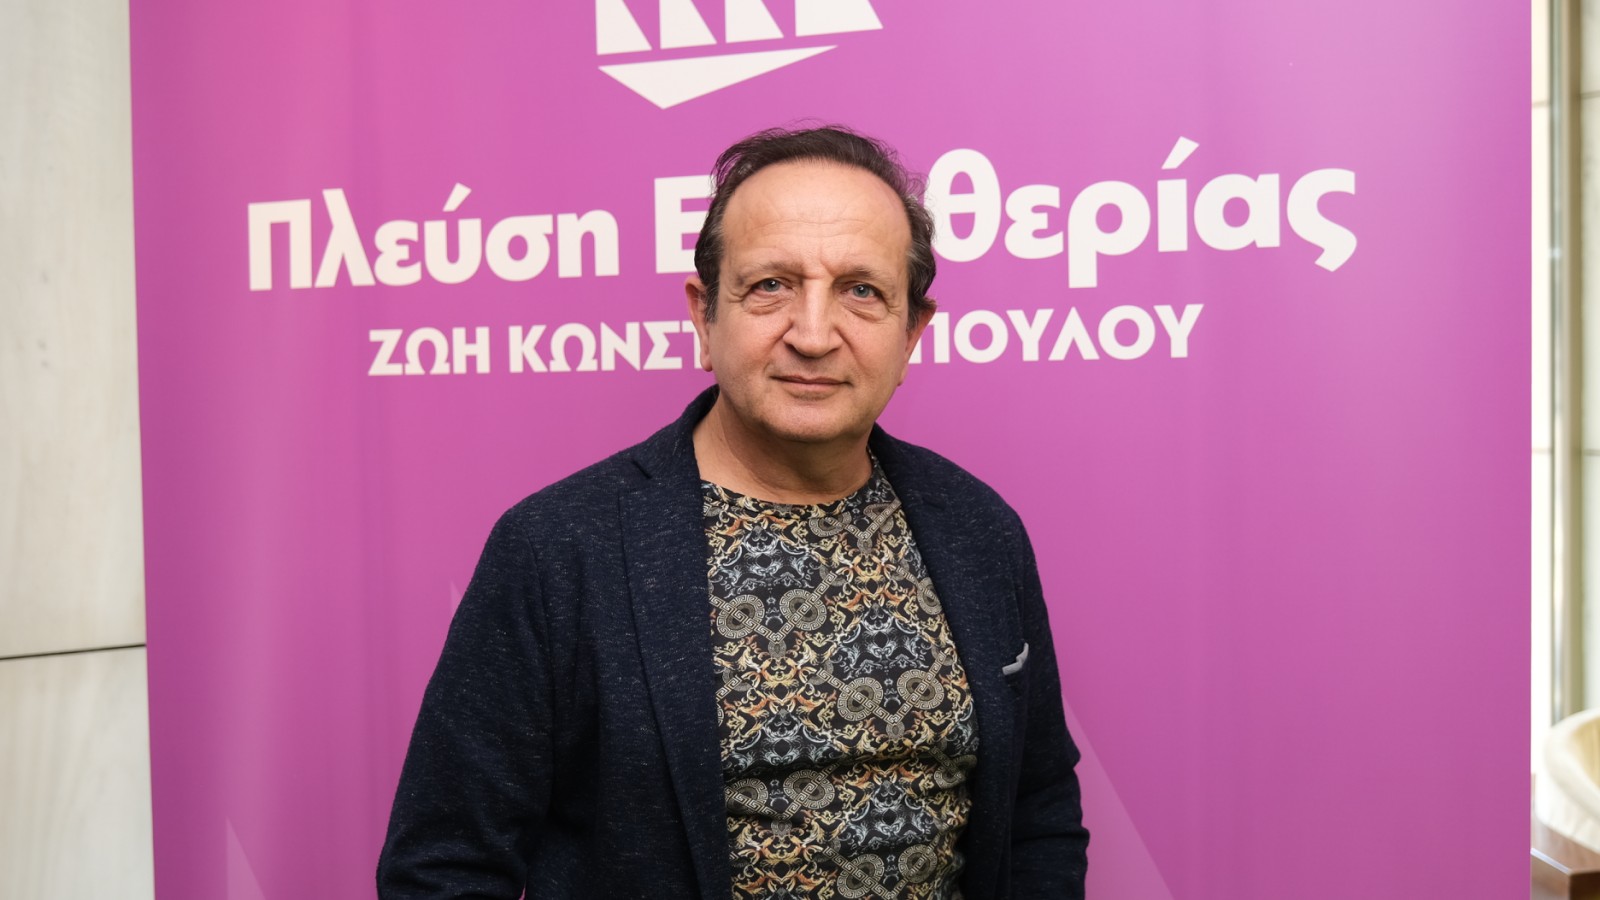 Μπιμπίλας – Ζωή Κωνσταντοπούλου: «O αρχηγός καταρτίζει τις λίστες όπως θέλει»